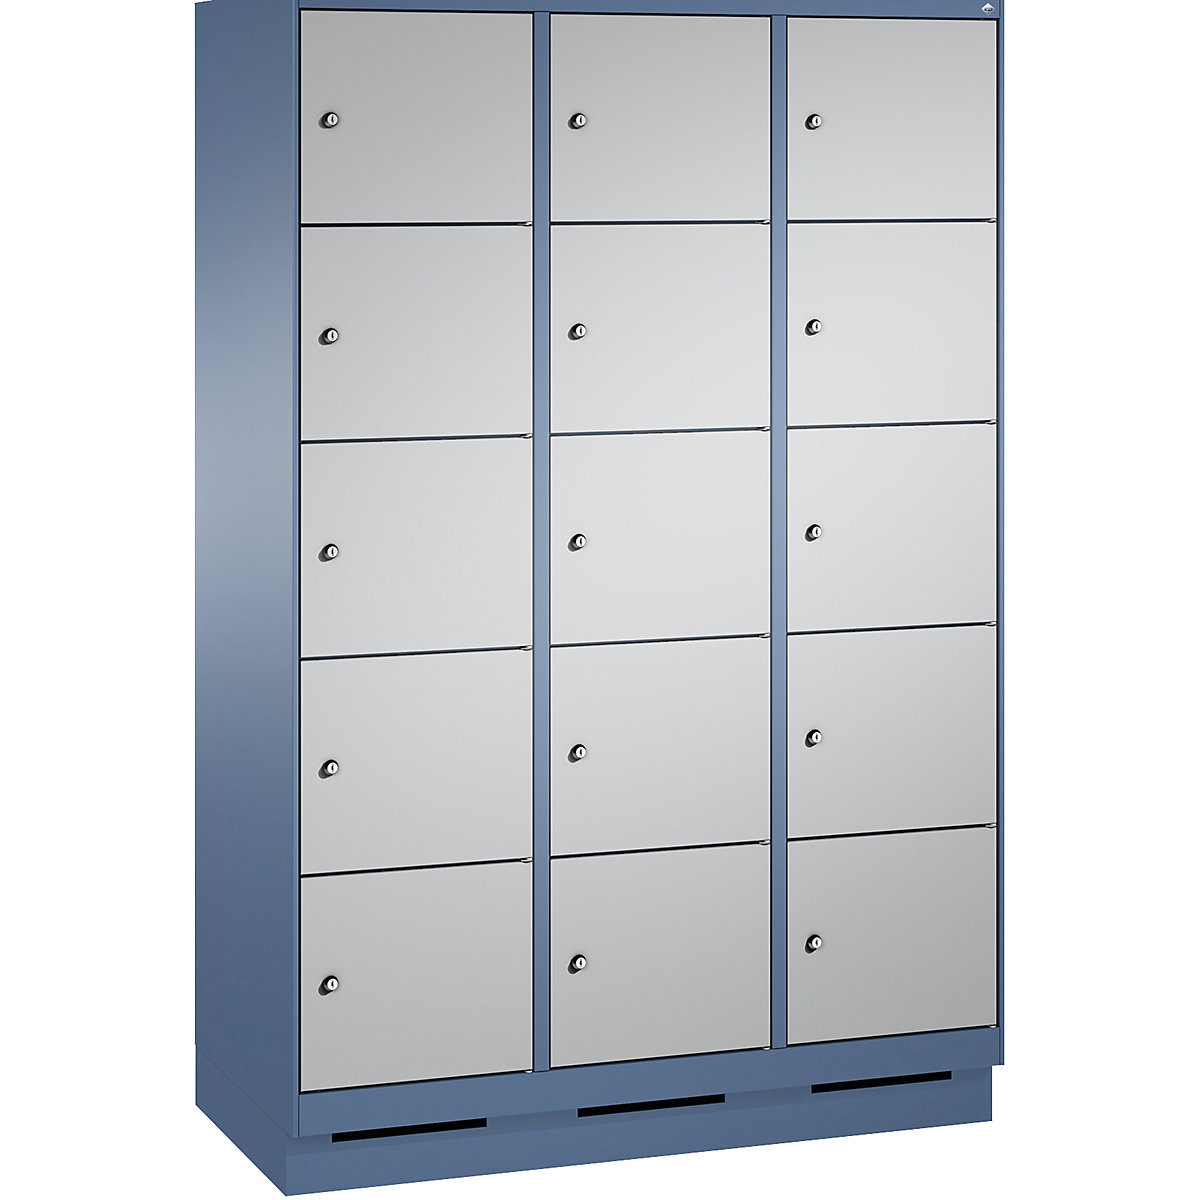 Armoire à casiers sur socle EVOLO – C+P, 3 compartiments, 5 casiers chacun, largeur compartiments 400 mm, bleu distant / aluminium-5